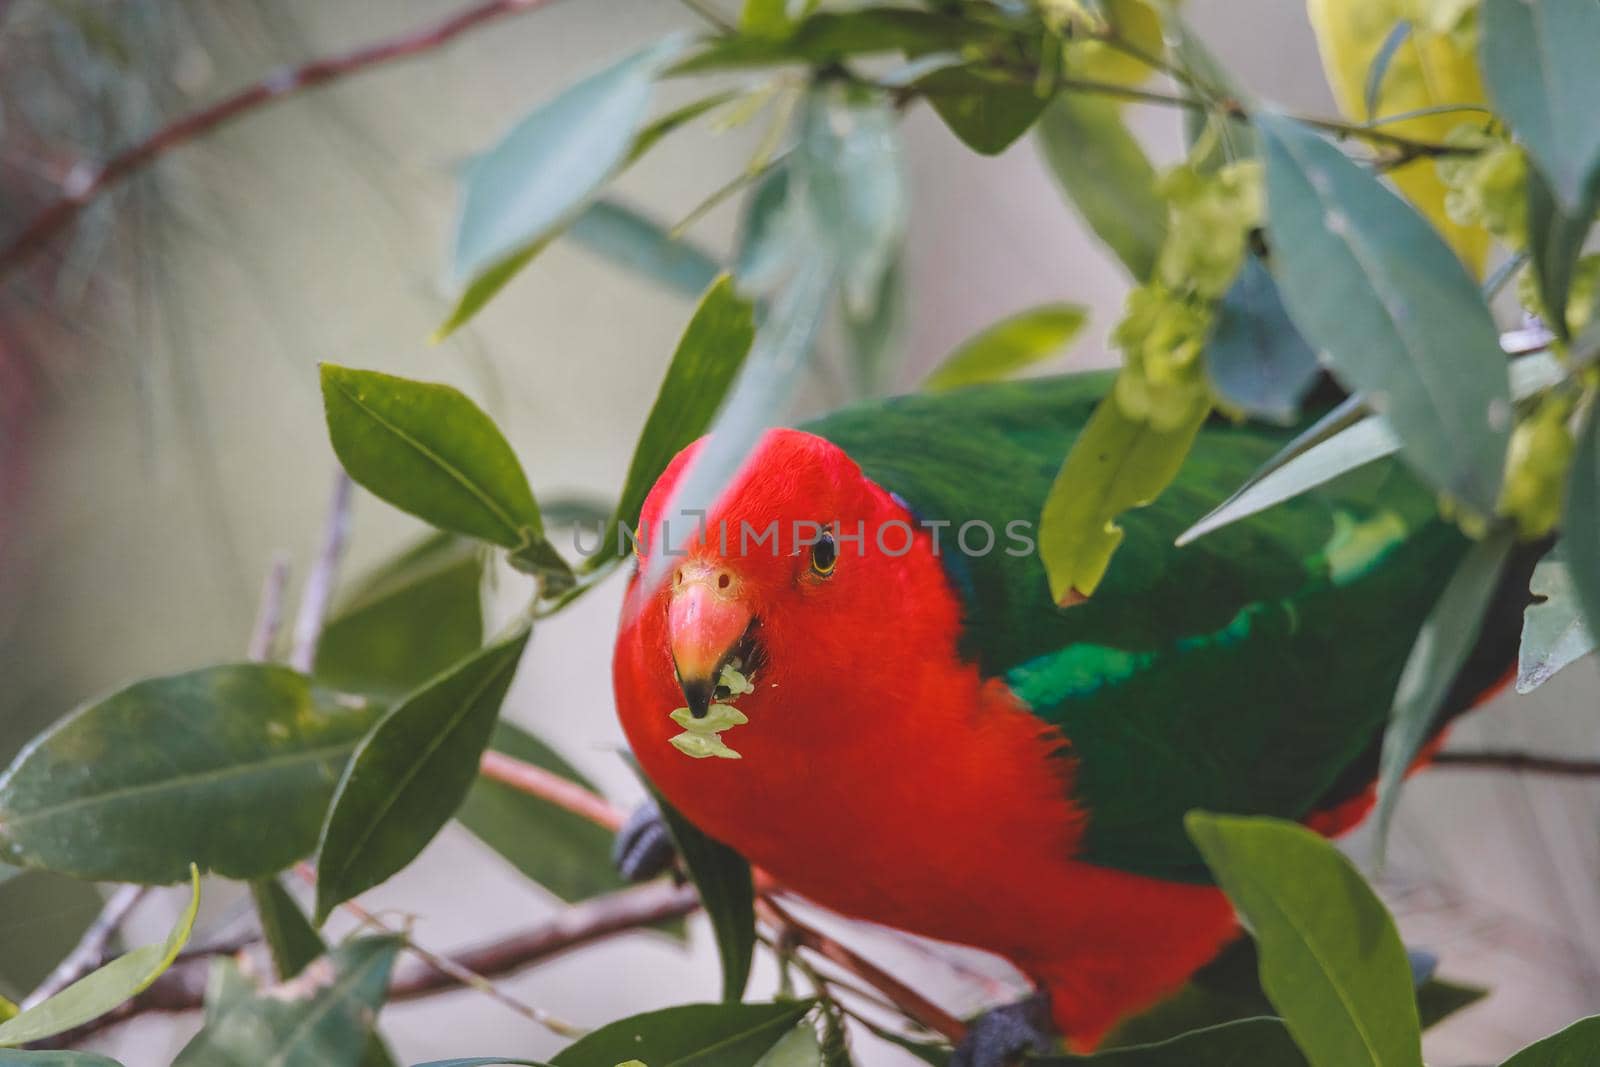 Australian King Parrot in a tree. by braydenstanfordphoto